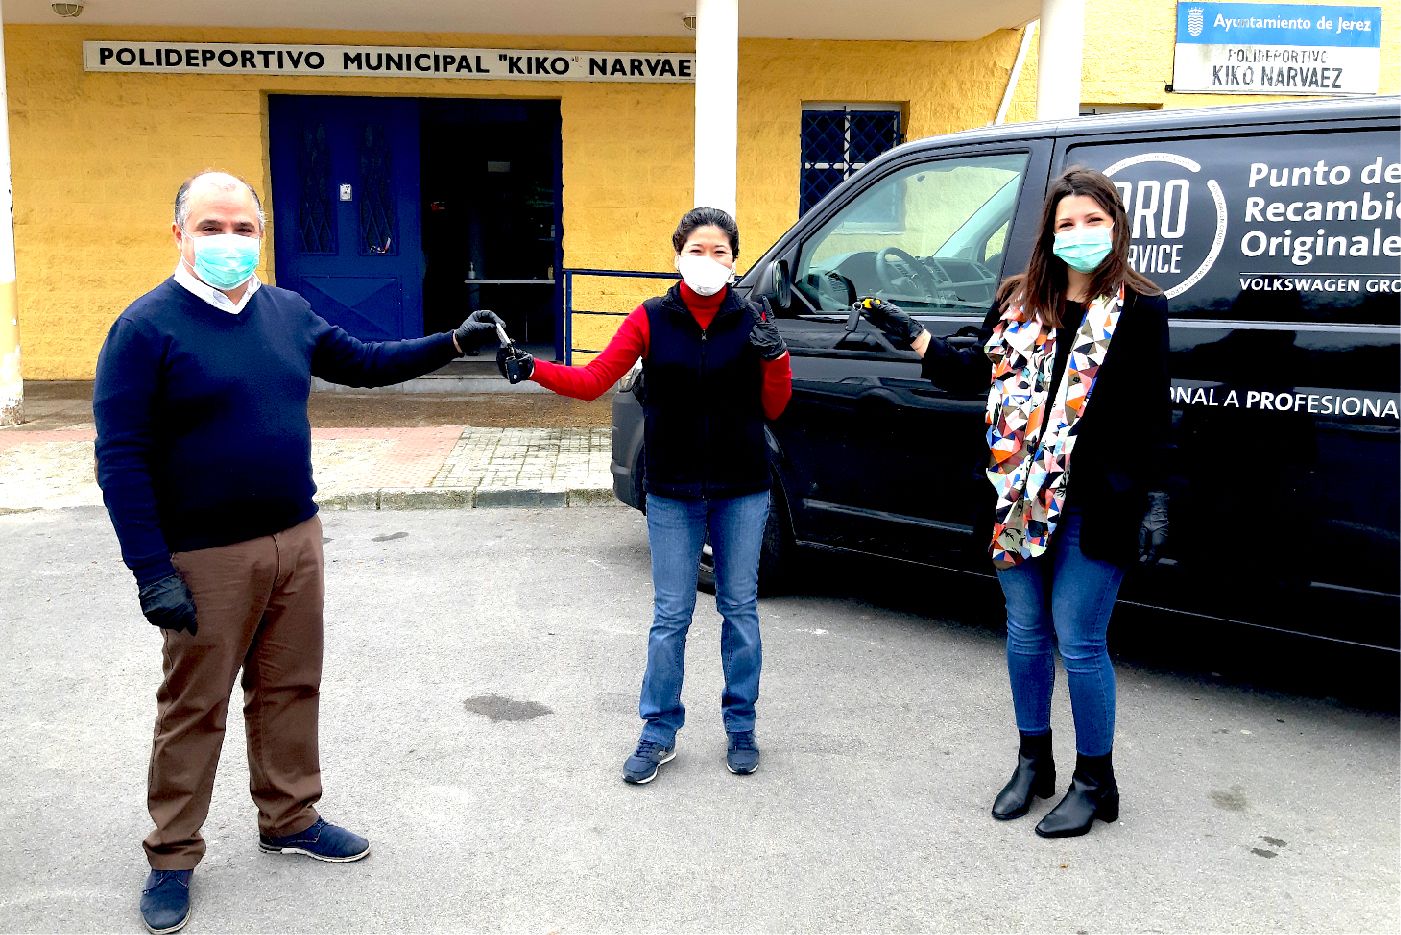 Grupo Solera colabora con el Ayuntamiento de Jerez en la lucha contra el coronavirus